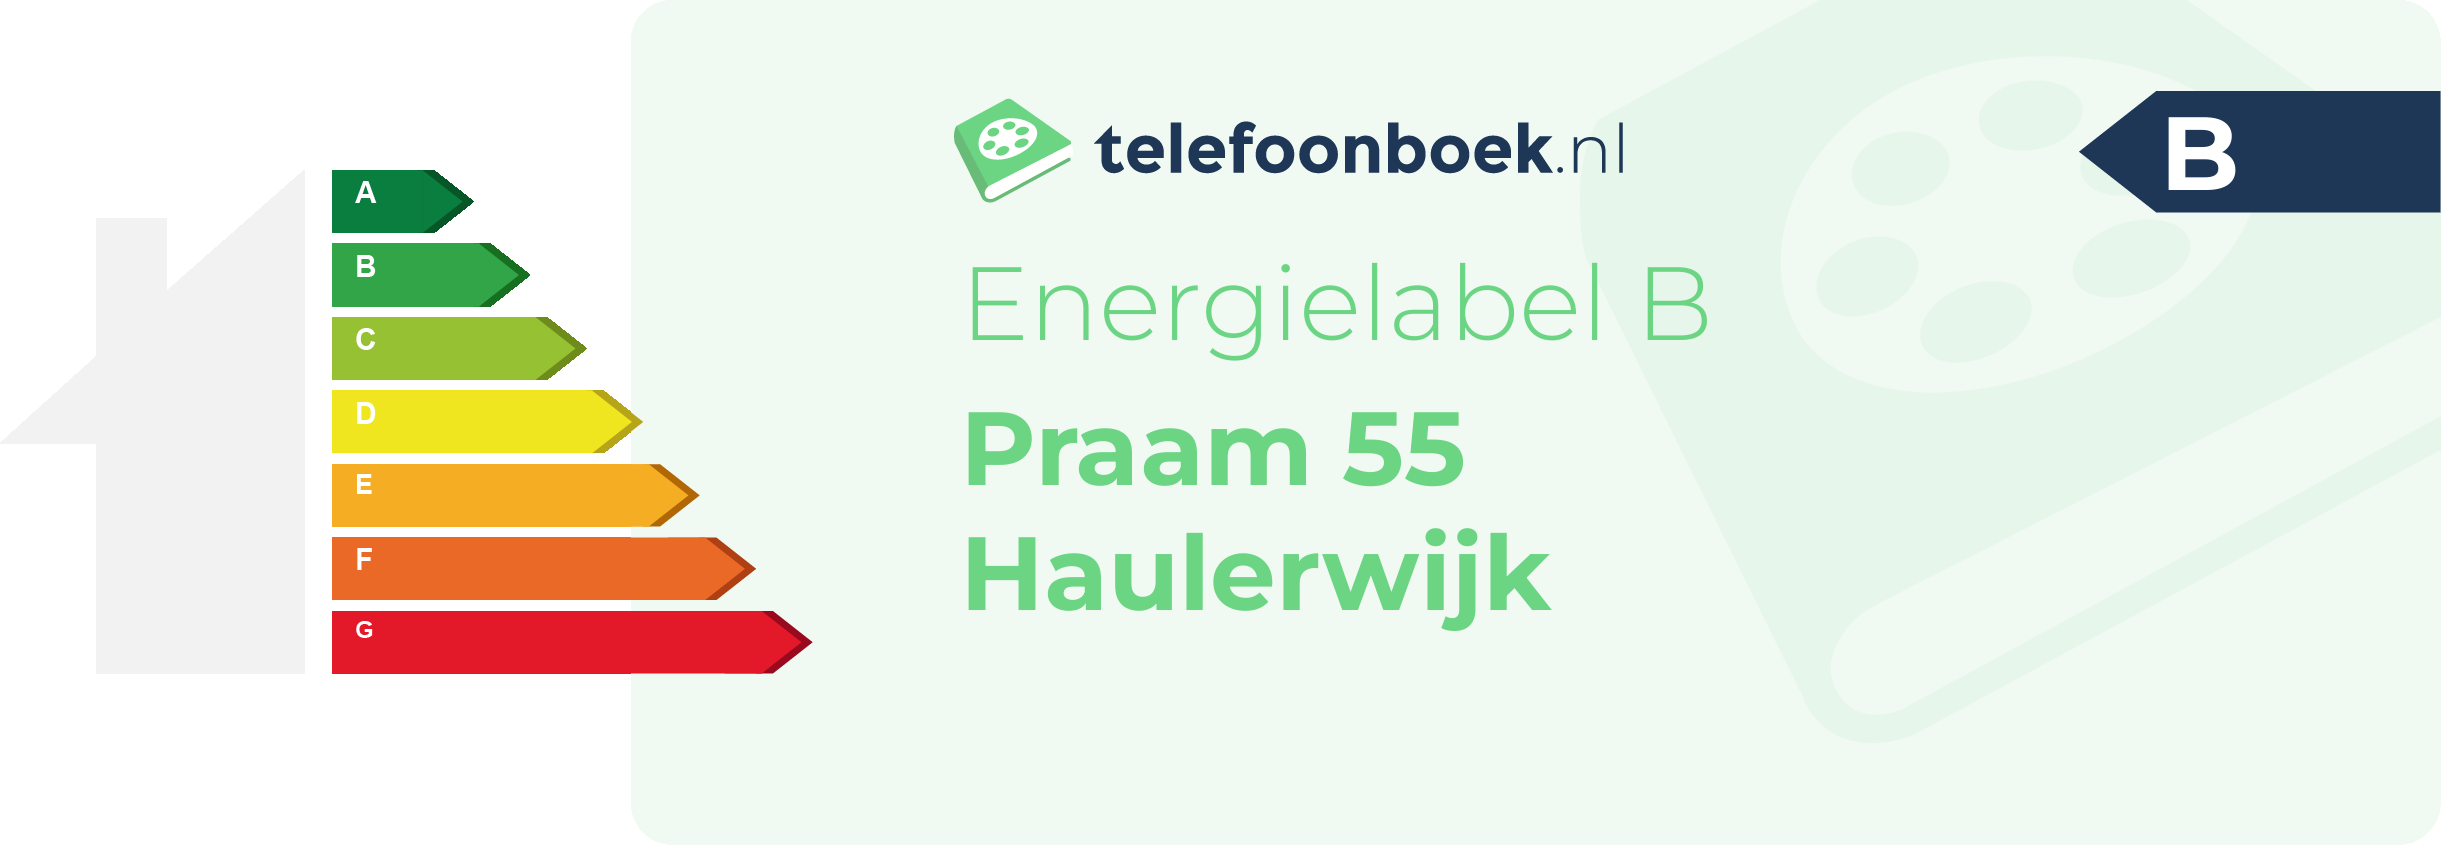 Energielabel Praam 55 Haulerwijk